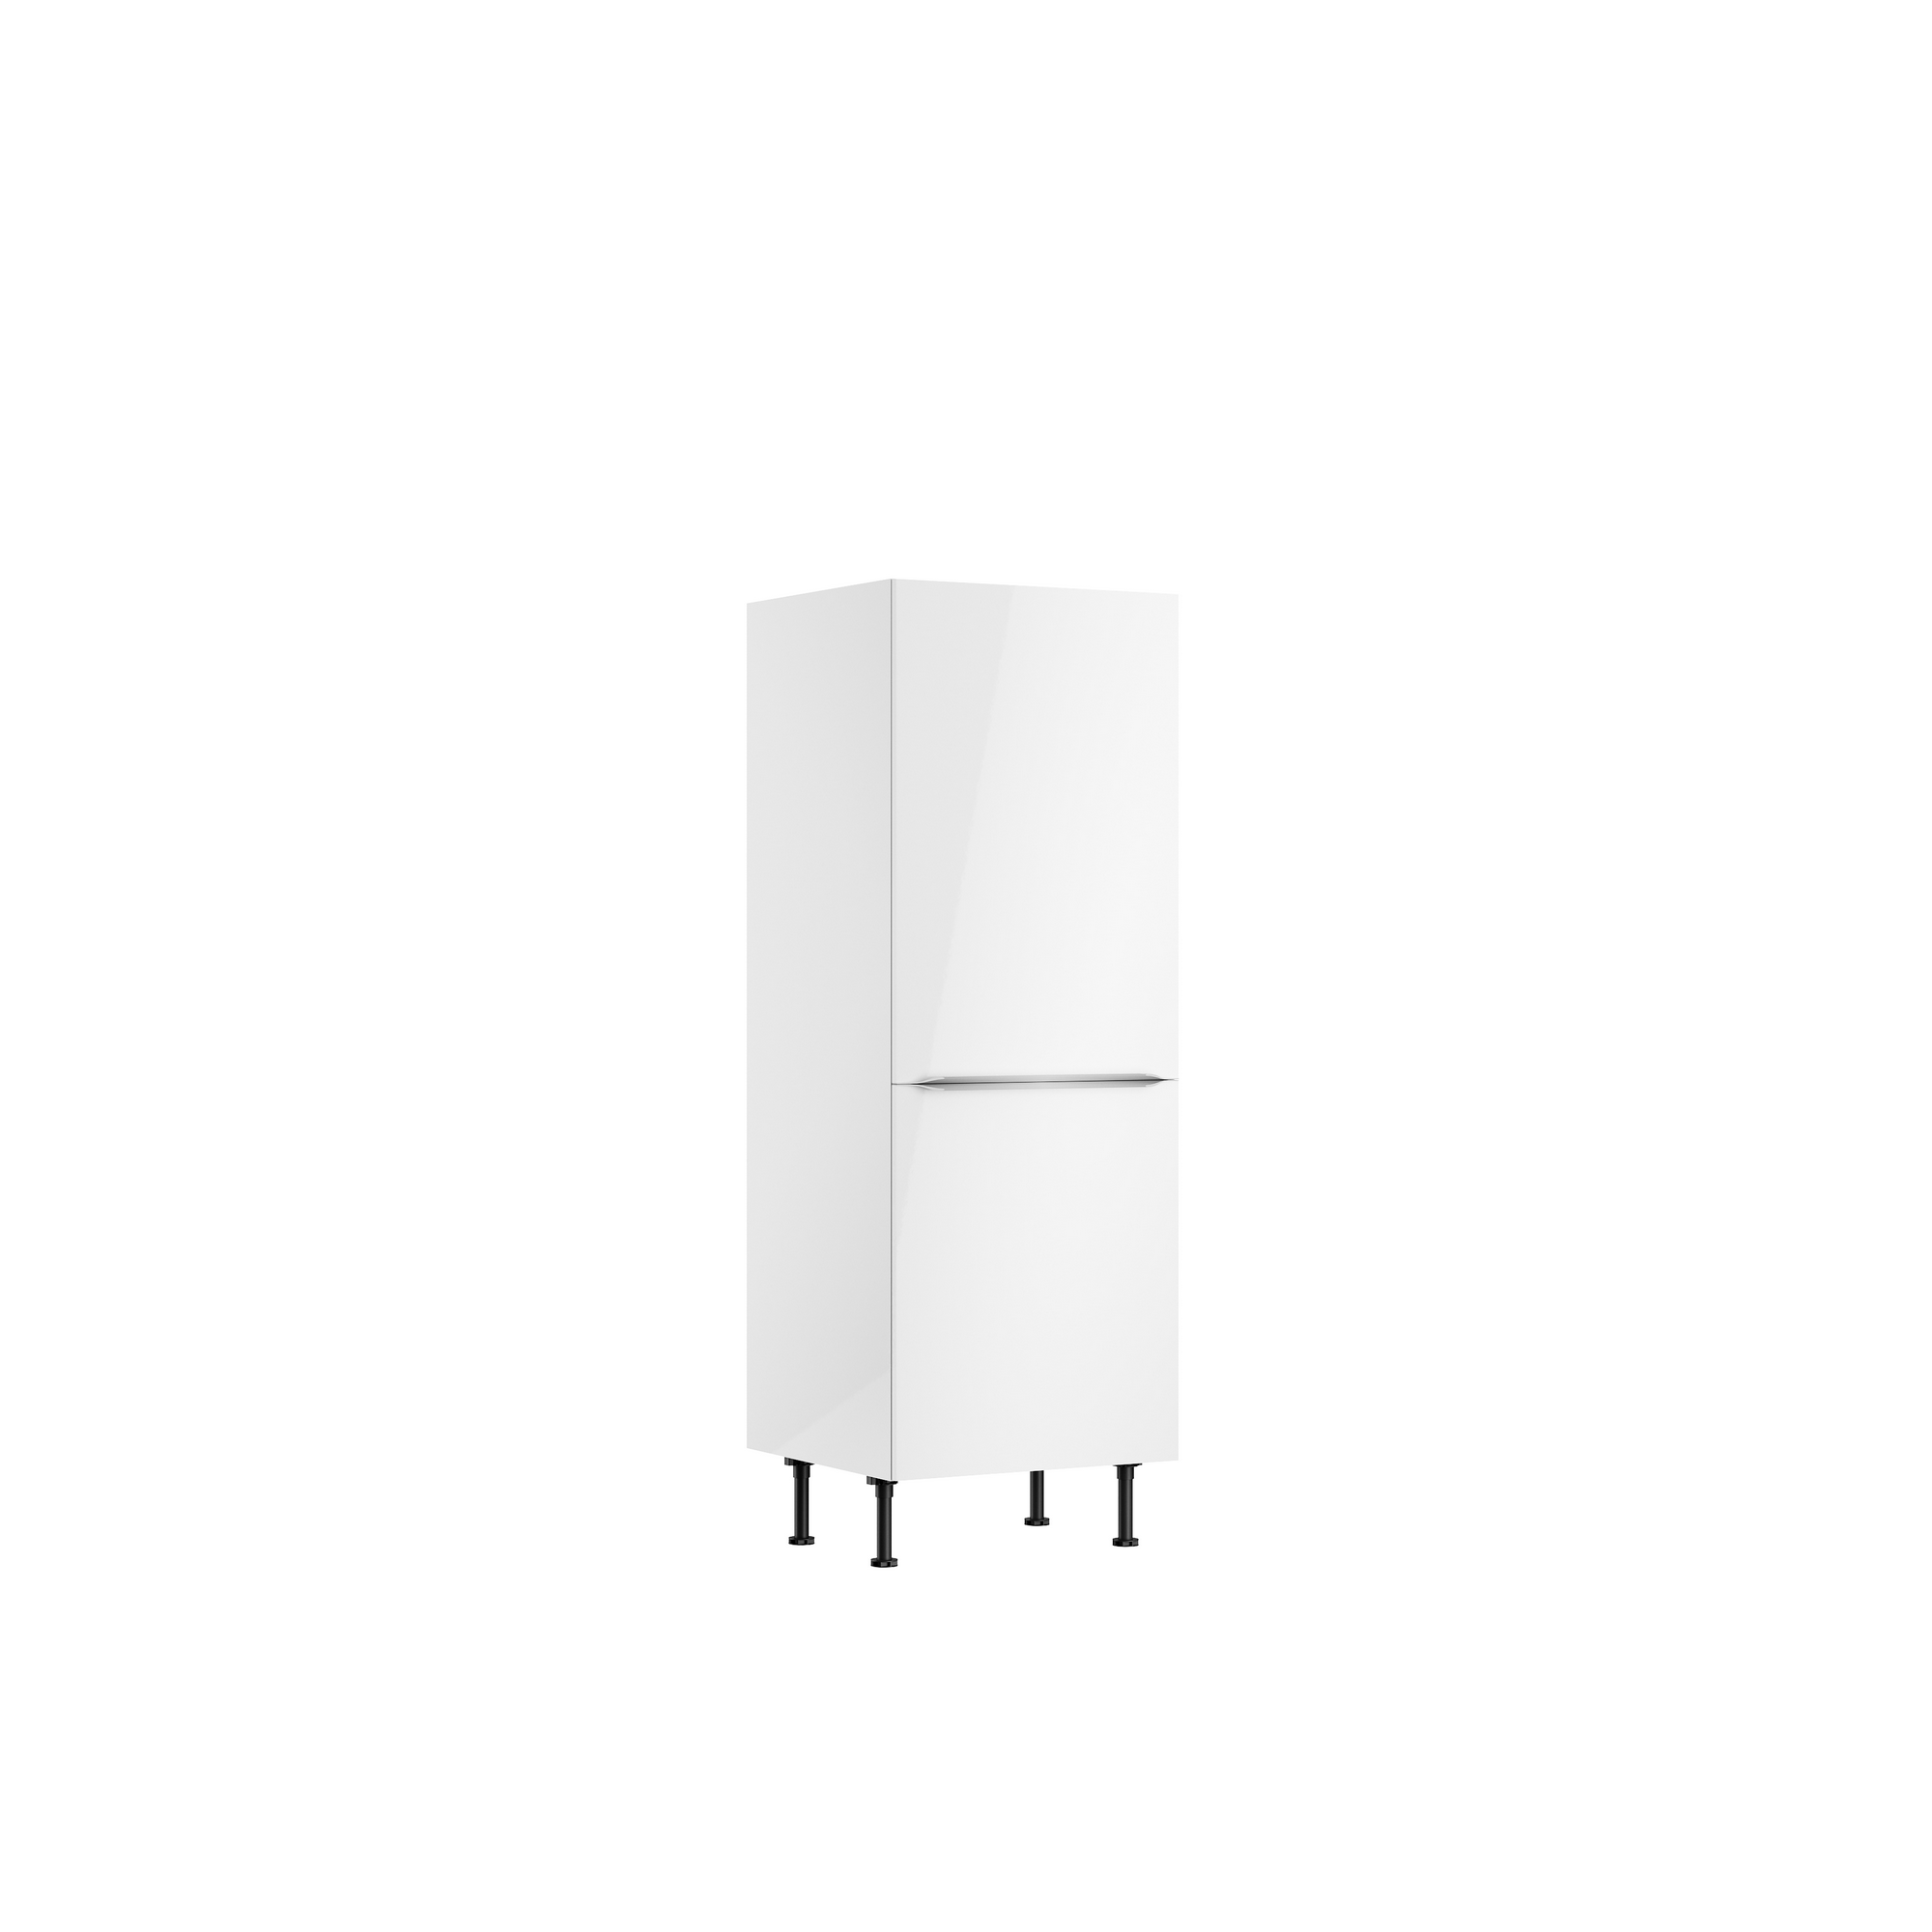 Midischrank für Einbaukühlschrank 'Optikomfort Arvid986' weiß 60 x 176,6 x 58,4 cm + product picture